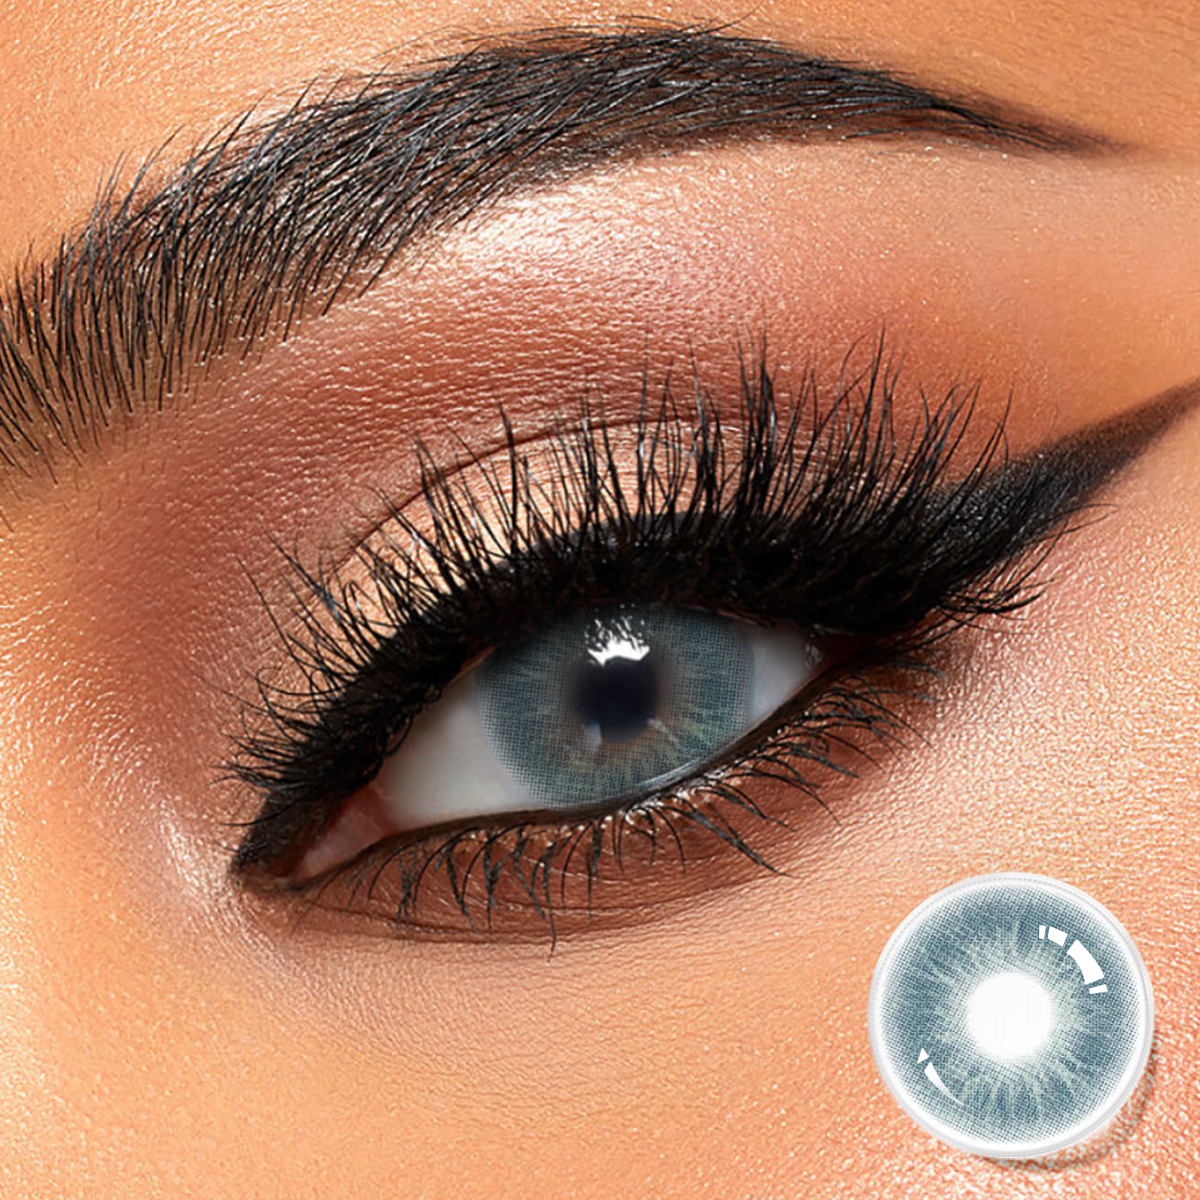 DBeyes Comfortable Color Contacts မျက်လုံး မျက်ကပ်မှန် လက်ကား နှစ်အလိုက် သဘာဝ ရောင်စုံ မျက်ကပ်မှန်